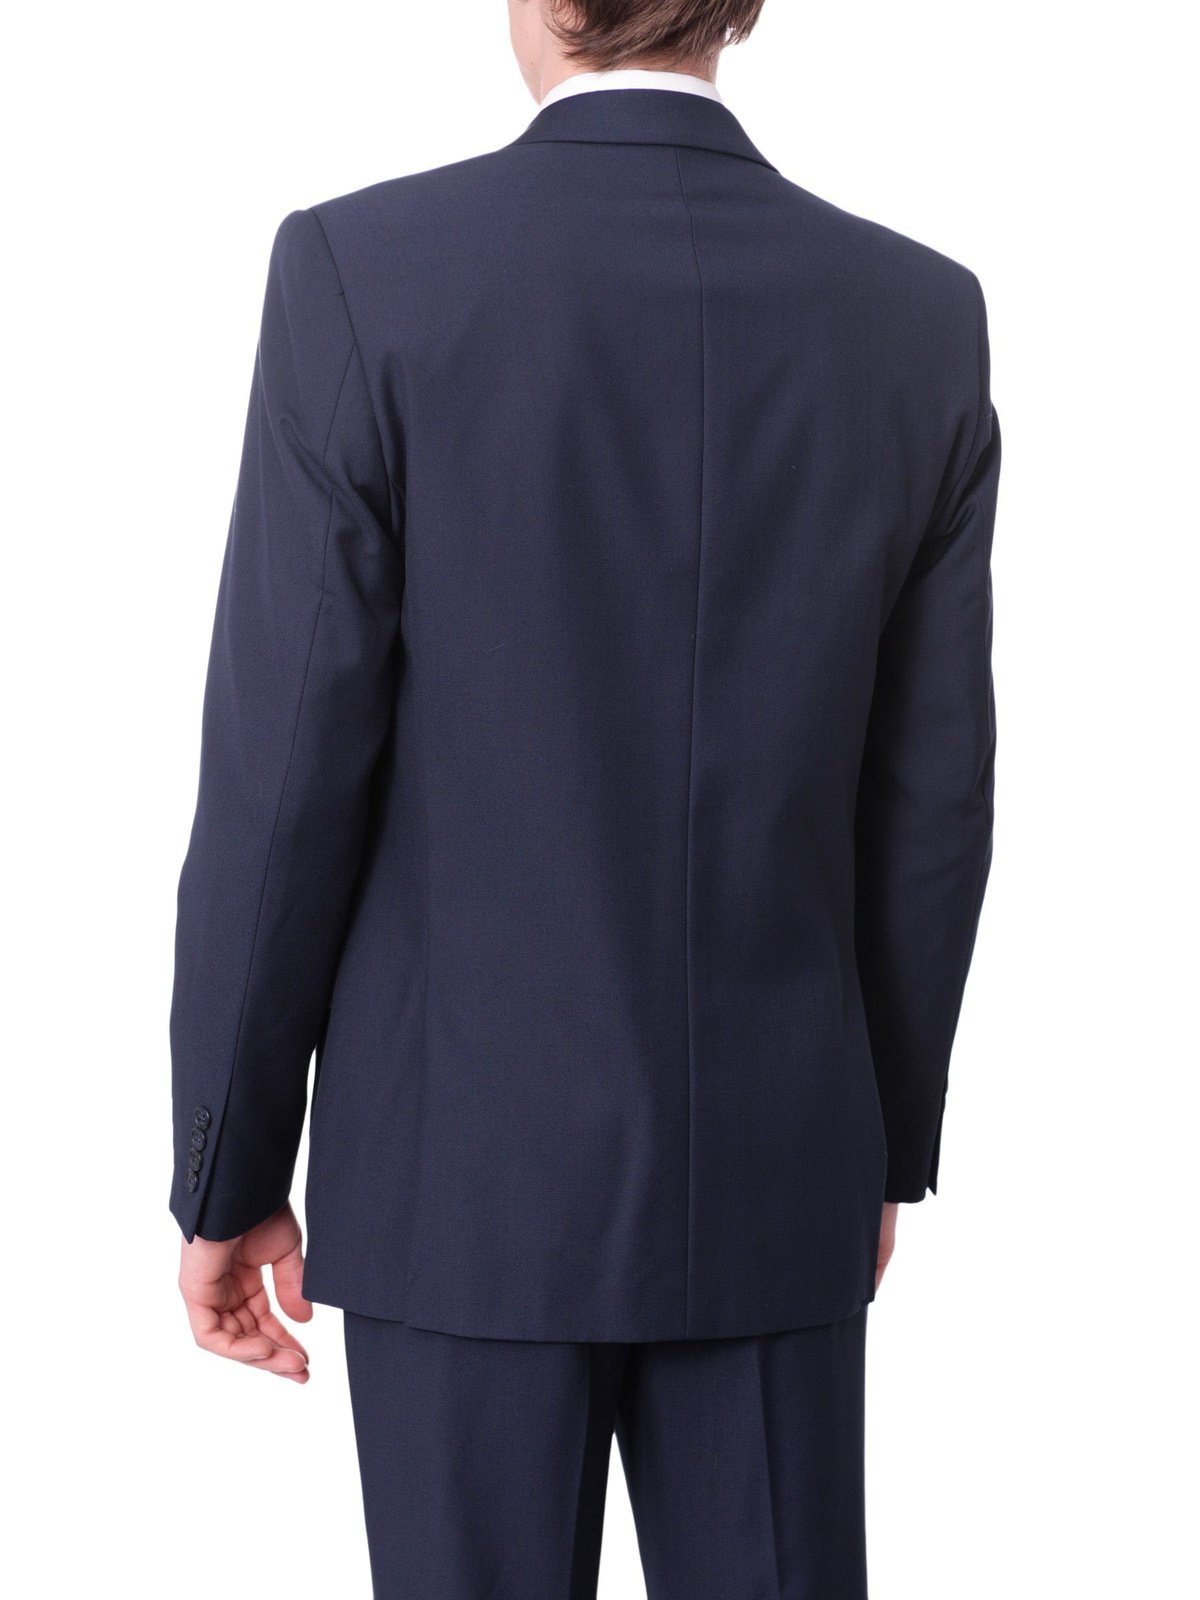 Men's 3 Piece Suit Slim Fit Suits One Button Formal Wedding Prom Suits ( Blazer + Vest + Pants) |